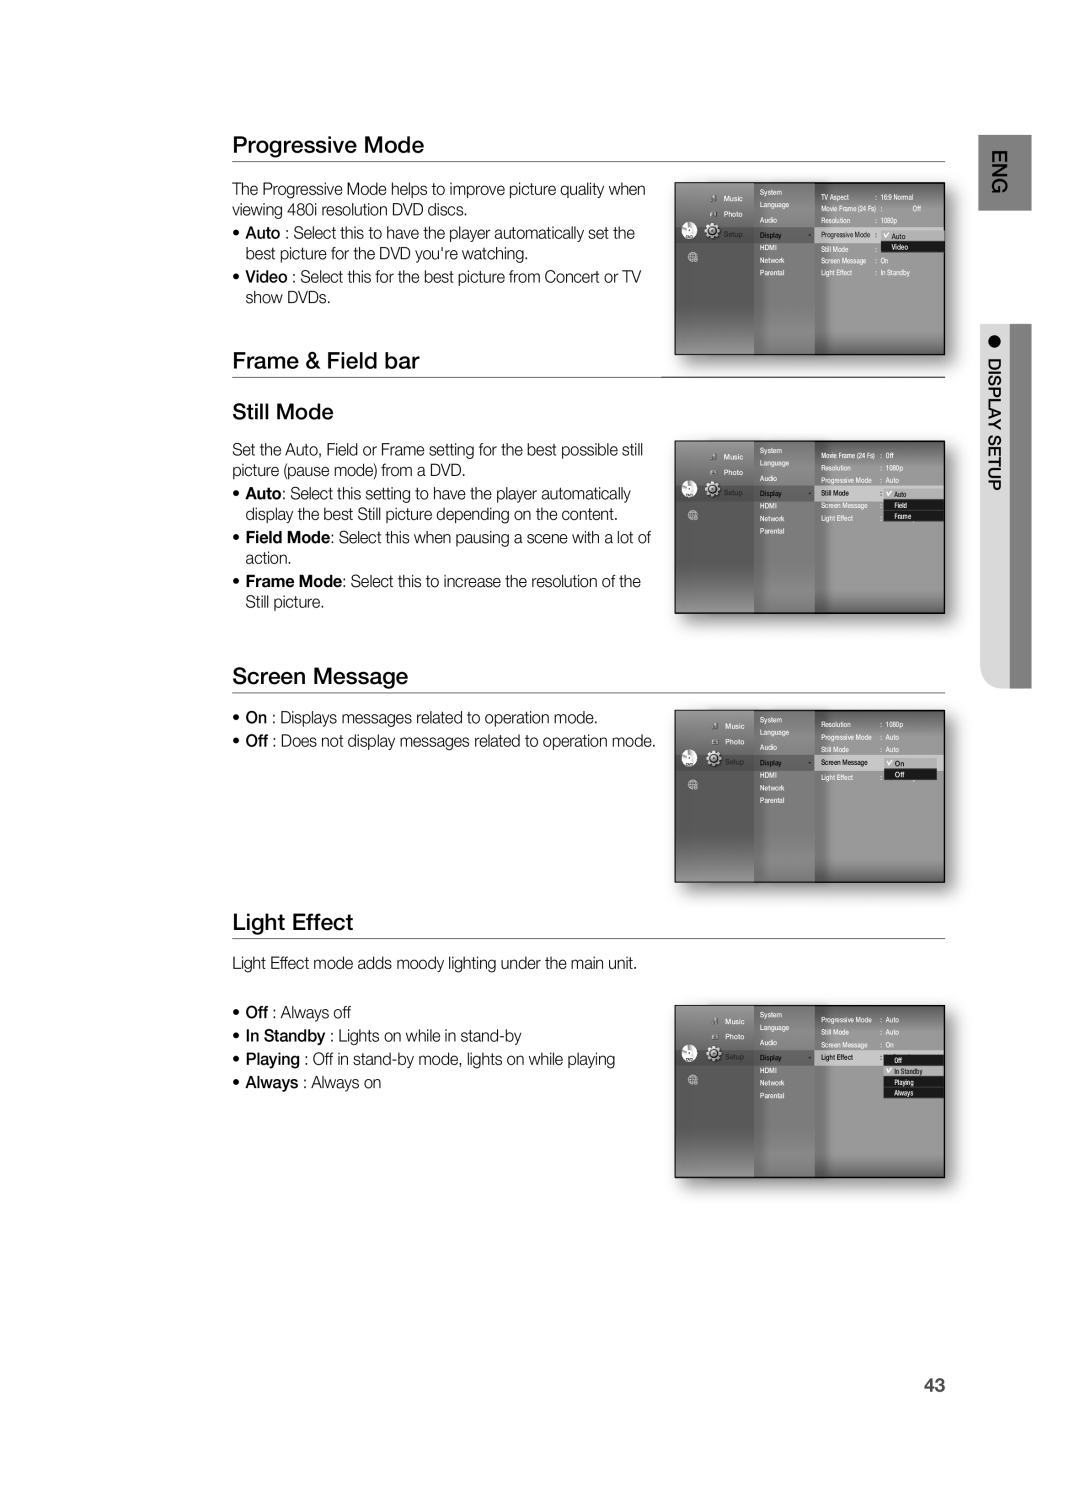 Samsung HT-BD8200 Progressive Mode, Frame & Field bar, Screen Message, Light Effect, Still Mode, • Off : Always off 